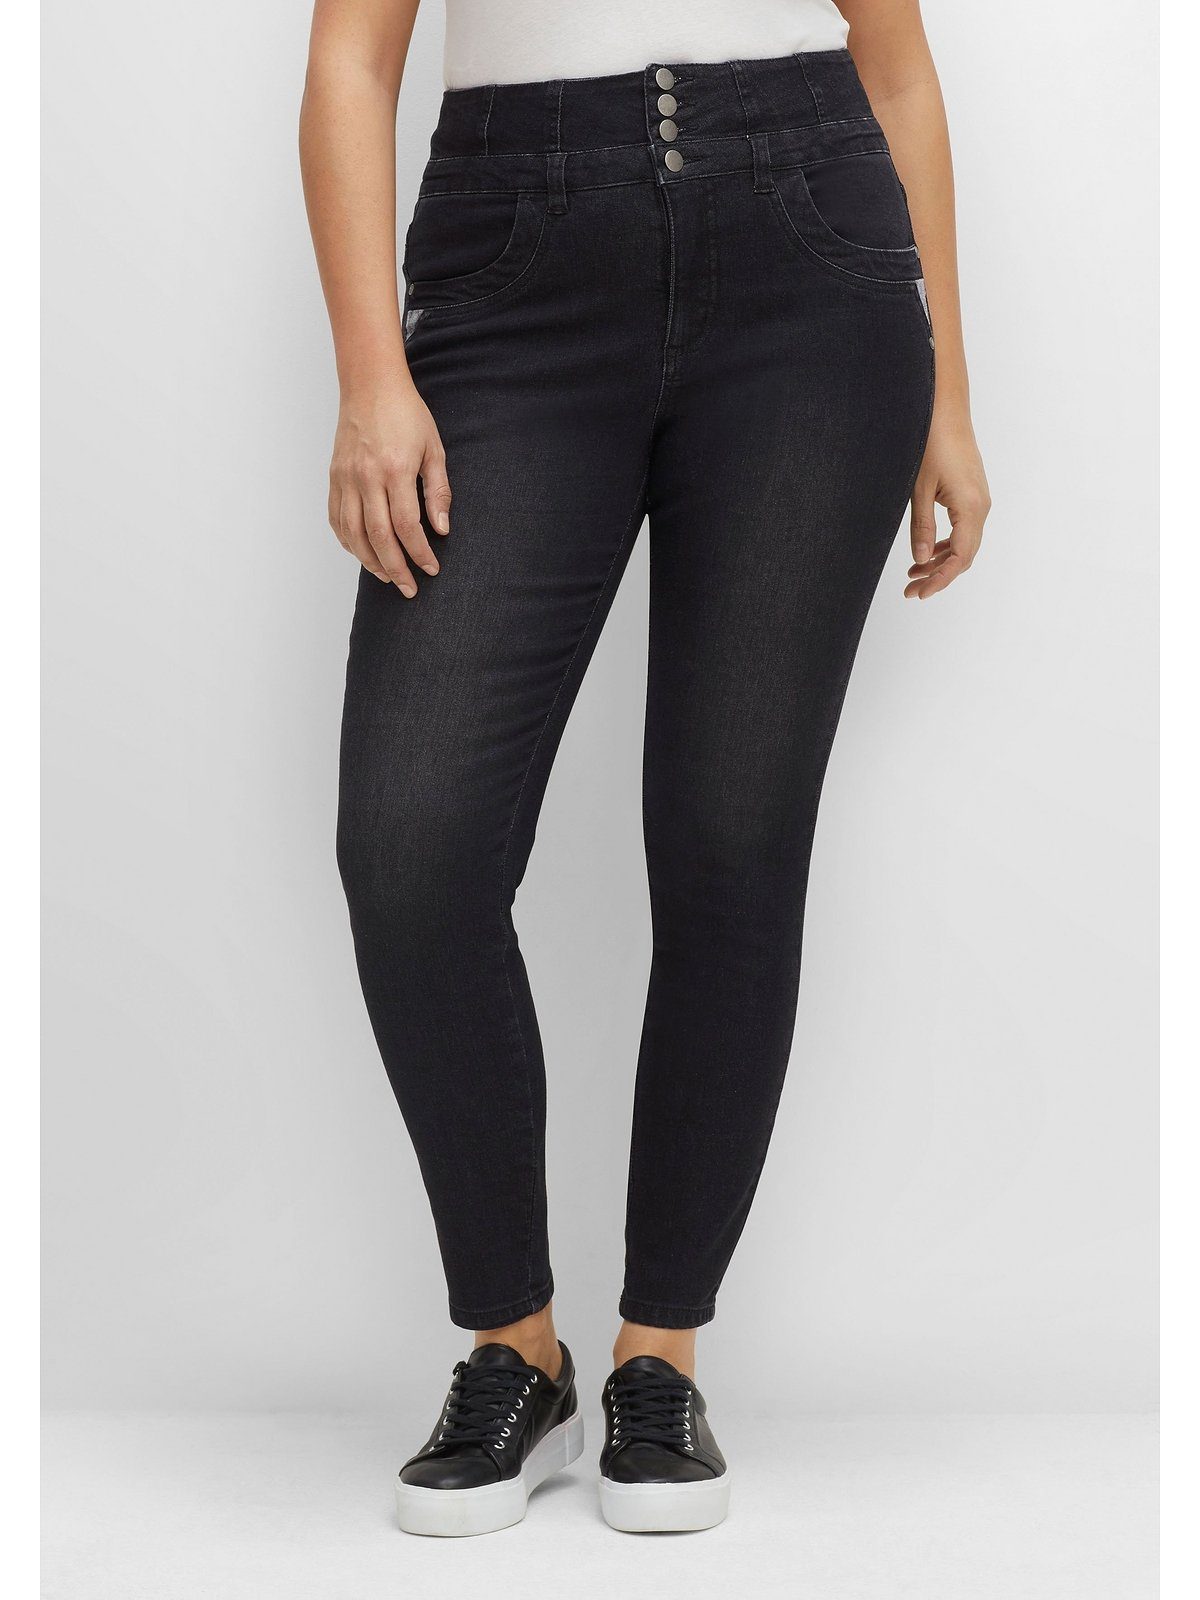 Schwarze Jeans Große Größe kaufen OTTO für Damen | online